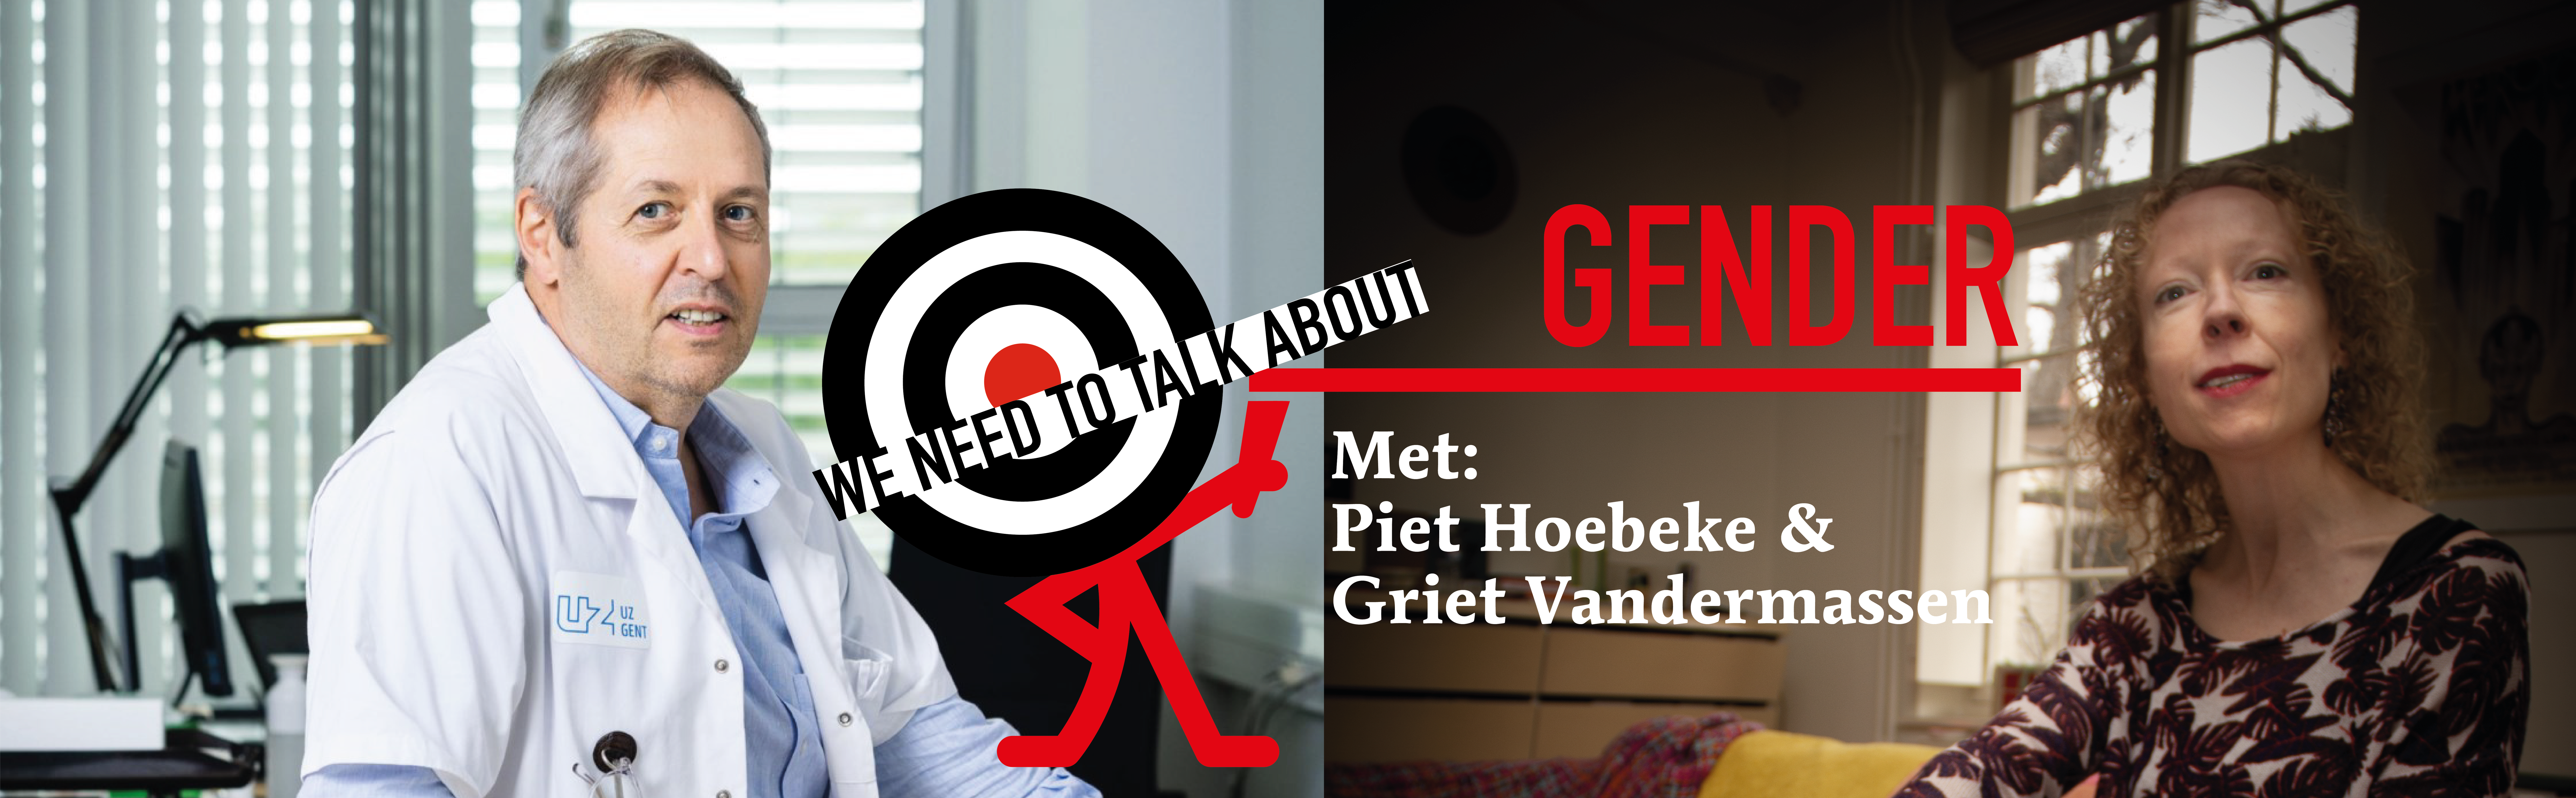 Herbeluister ‘We Need to Talk About: Gender’ met Piet Hoebeke en Griet Vandermassen